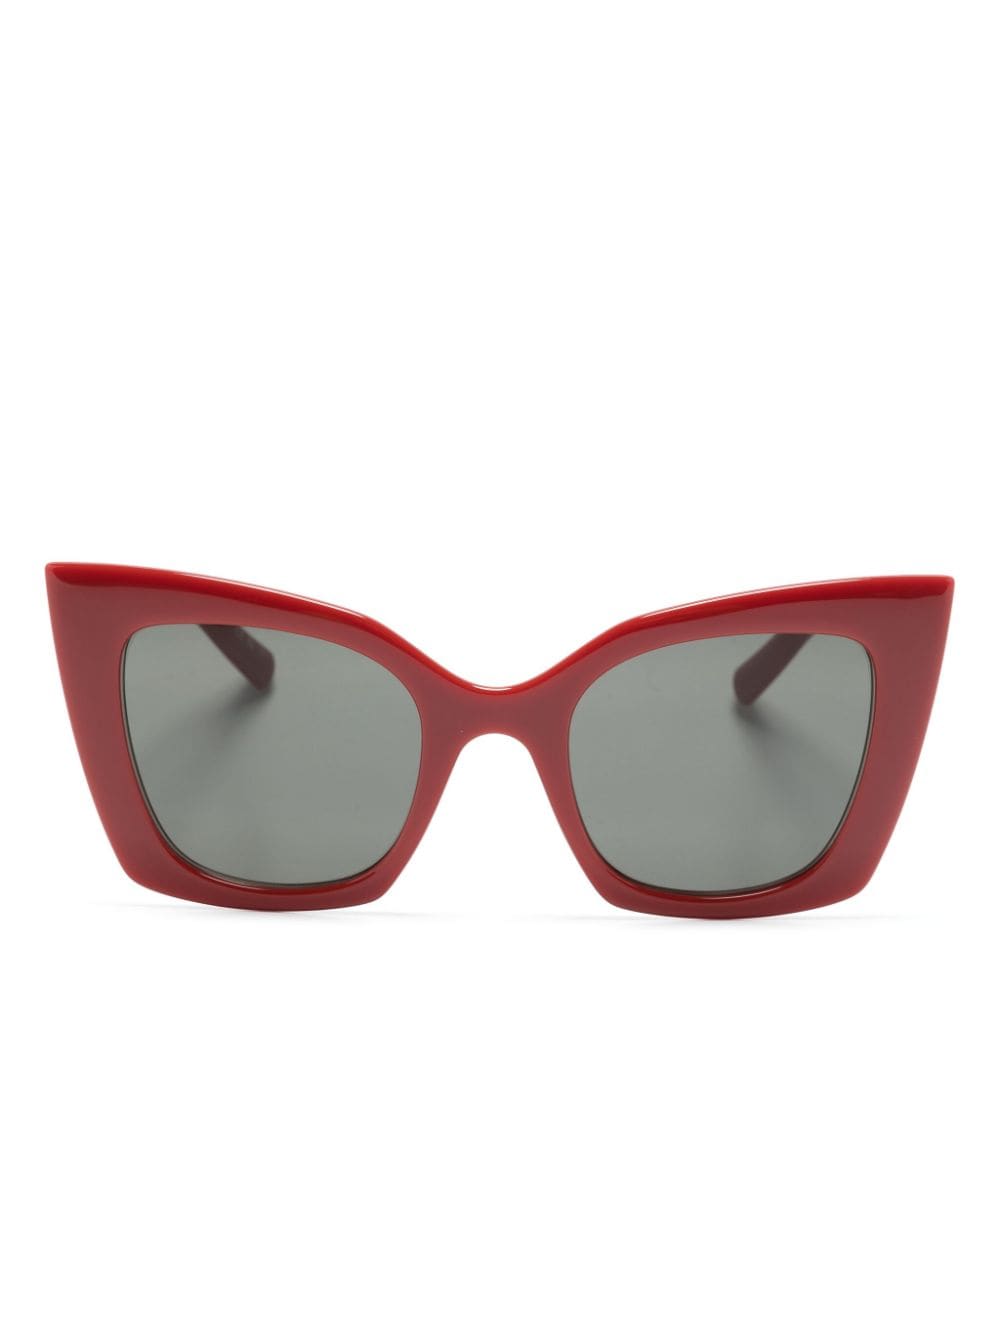 Saint Laurent Eyewear SL 552 oversize-frame sunglasses - Red von Saint Laurent Eyewear